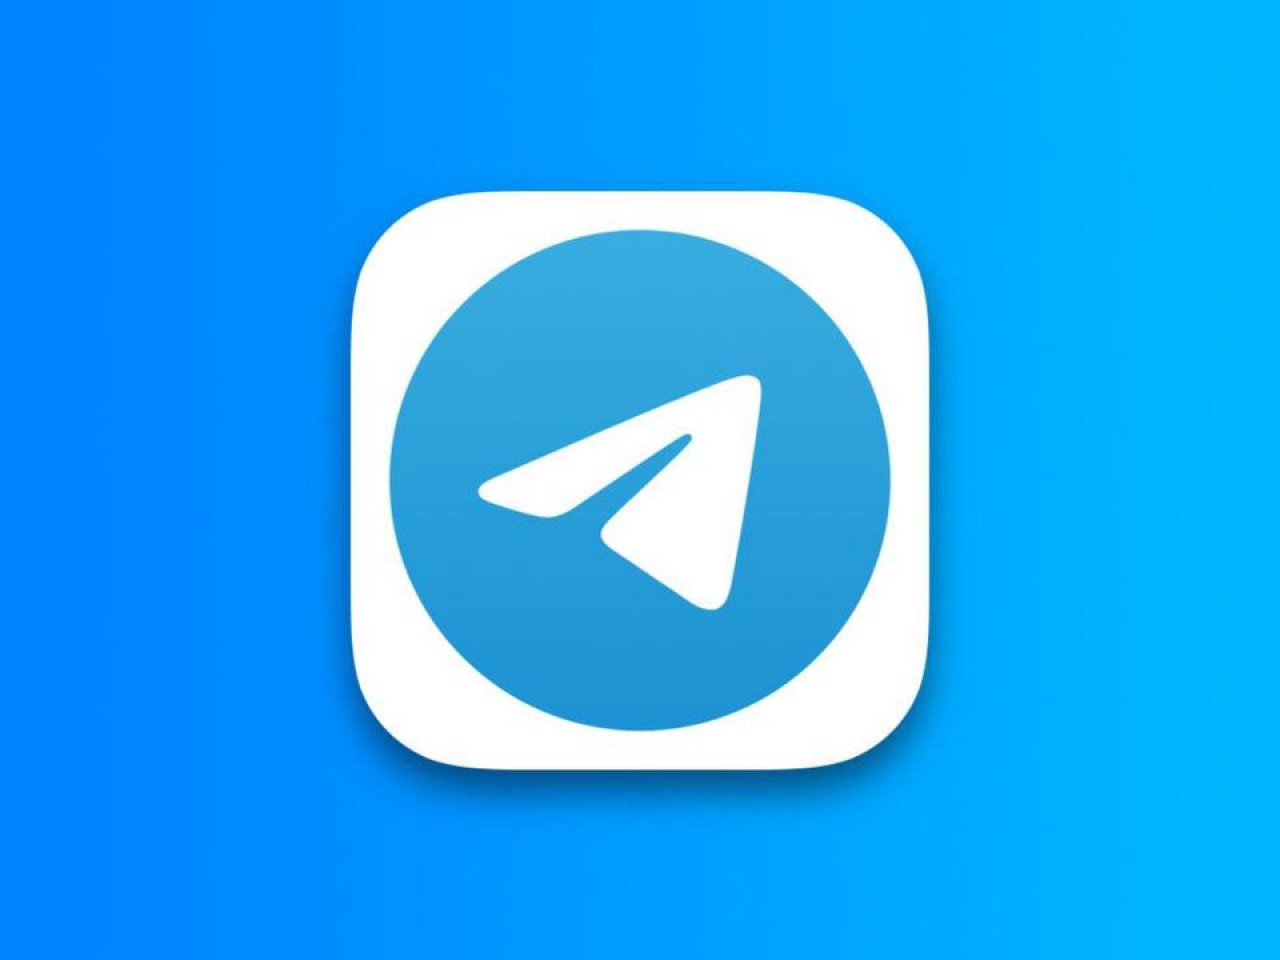 Количество подписчиков русскоязычных каналов в Telegram выросло до 2 млрд